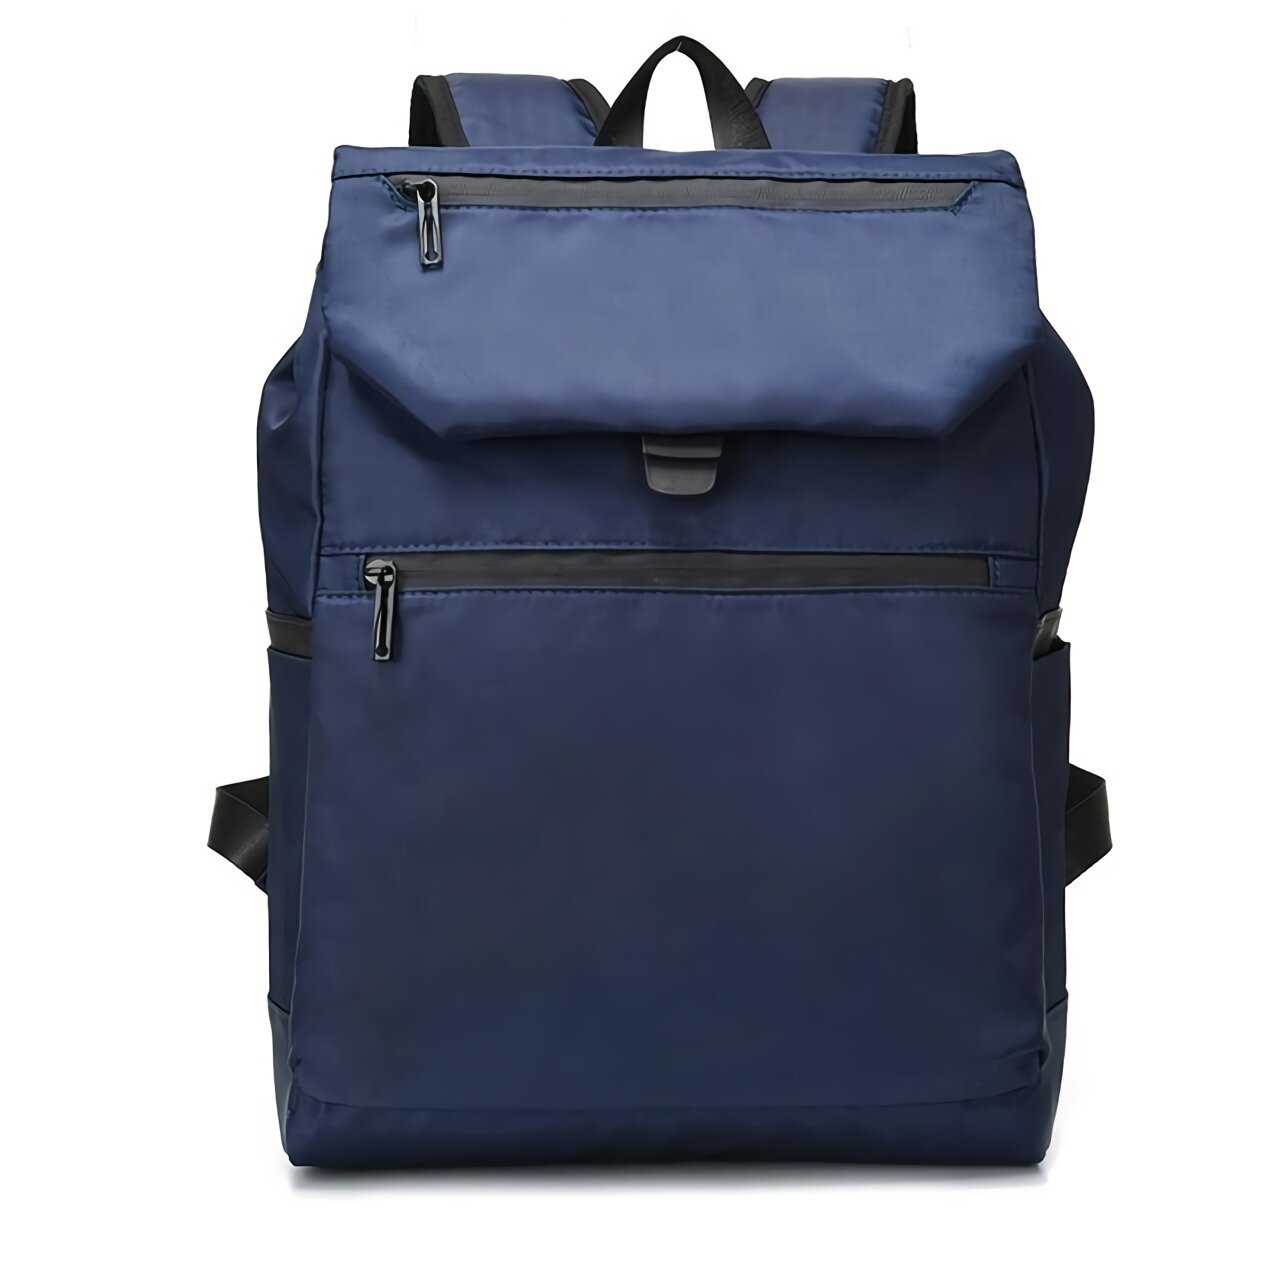 15 Zoll Laptop Rucksack wasserdicht Nylon Travel Schule Bagpack für Laptop Tablet Bücher